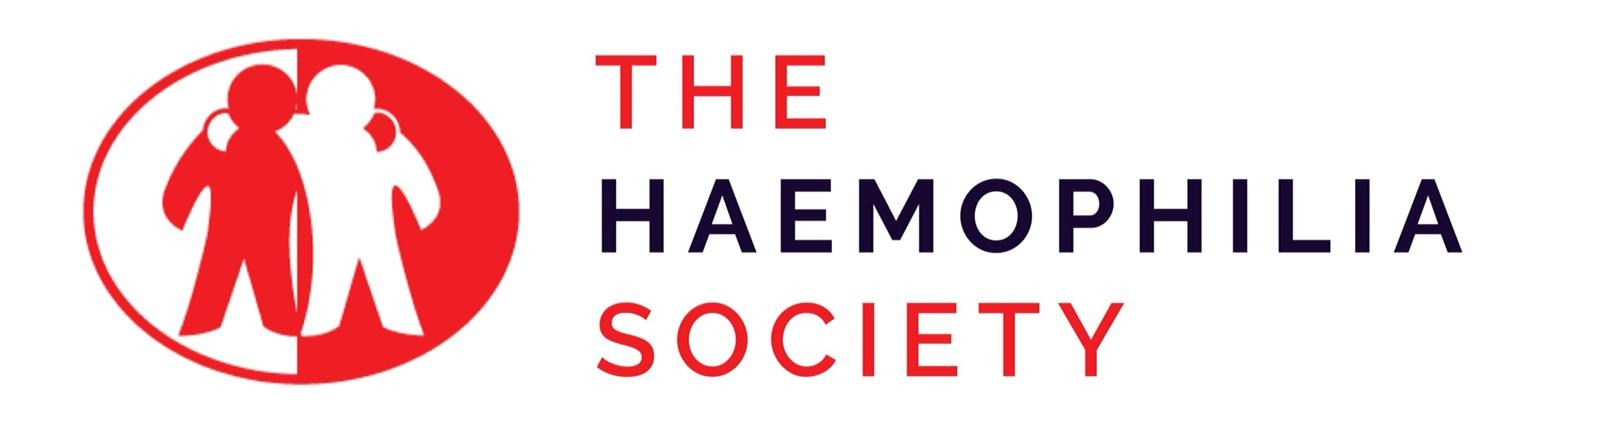 The Haemophilia Society